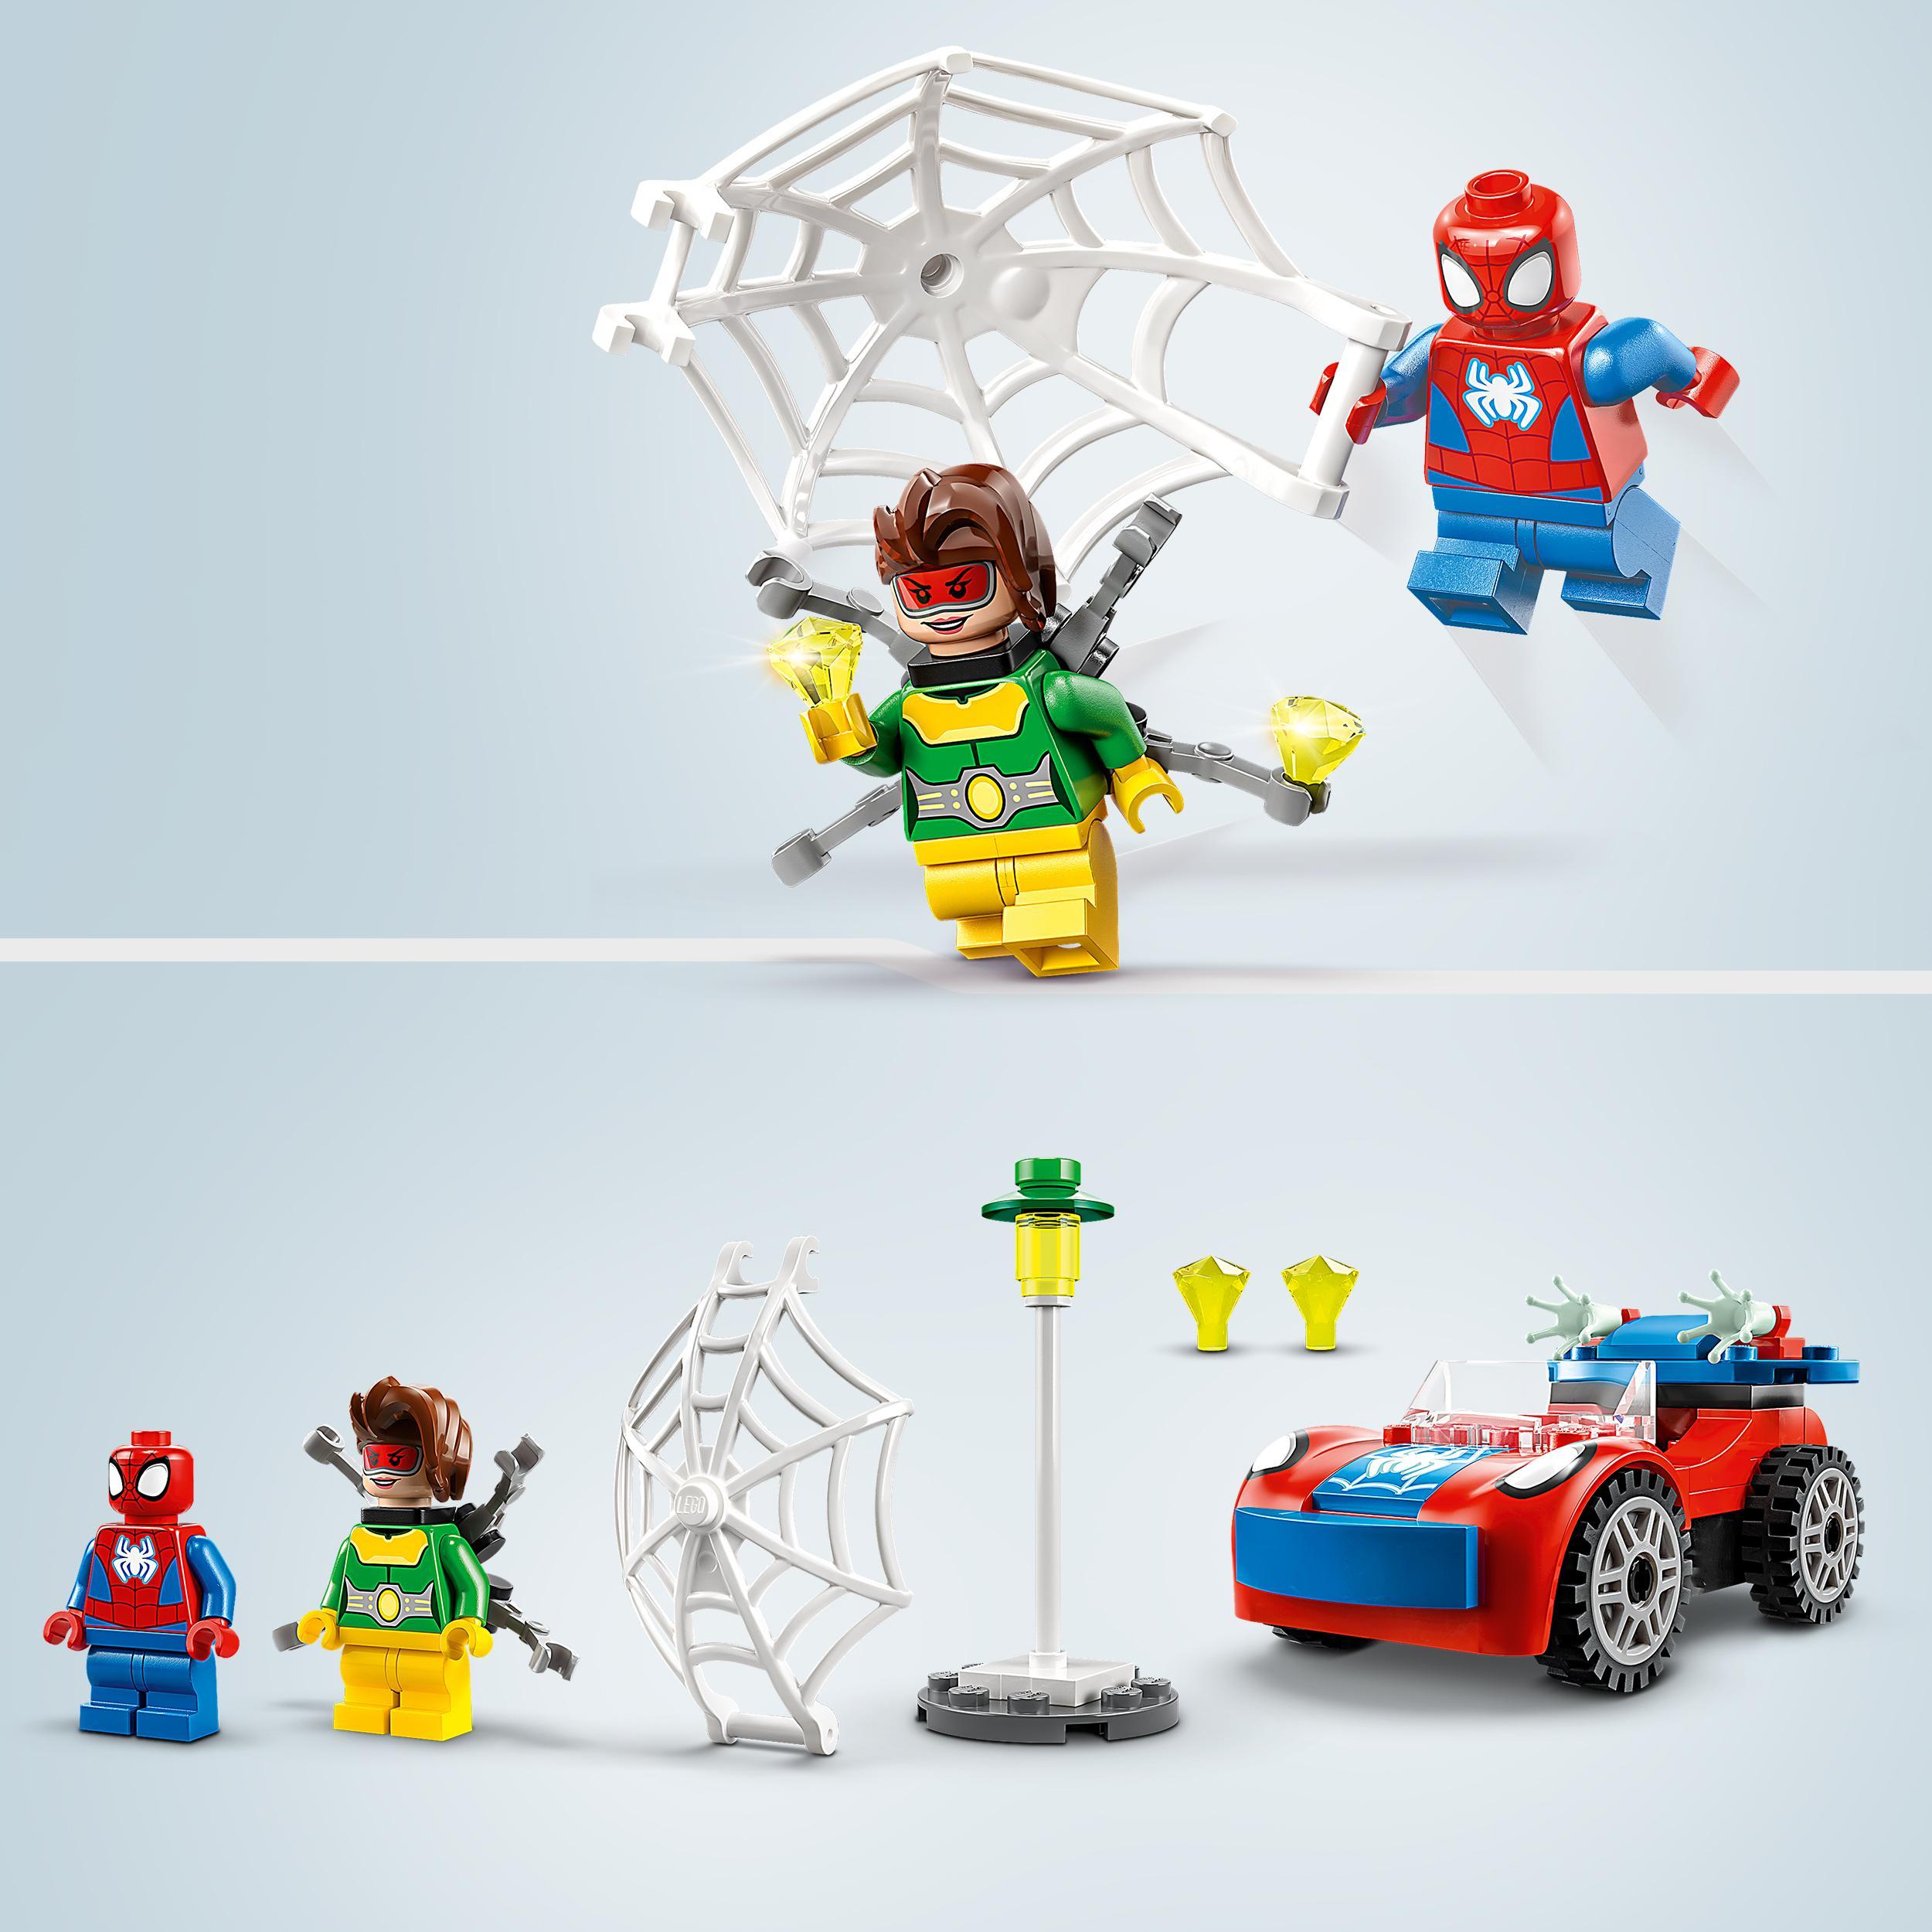 Lego marvel 10789 l’auto di spider-man e doc ock, macchina giocattolo di spidey e i suoi fantastici amici, giochi per bambini 4+ - LEGO SUPER HEROES, Avengers, Spiderman